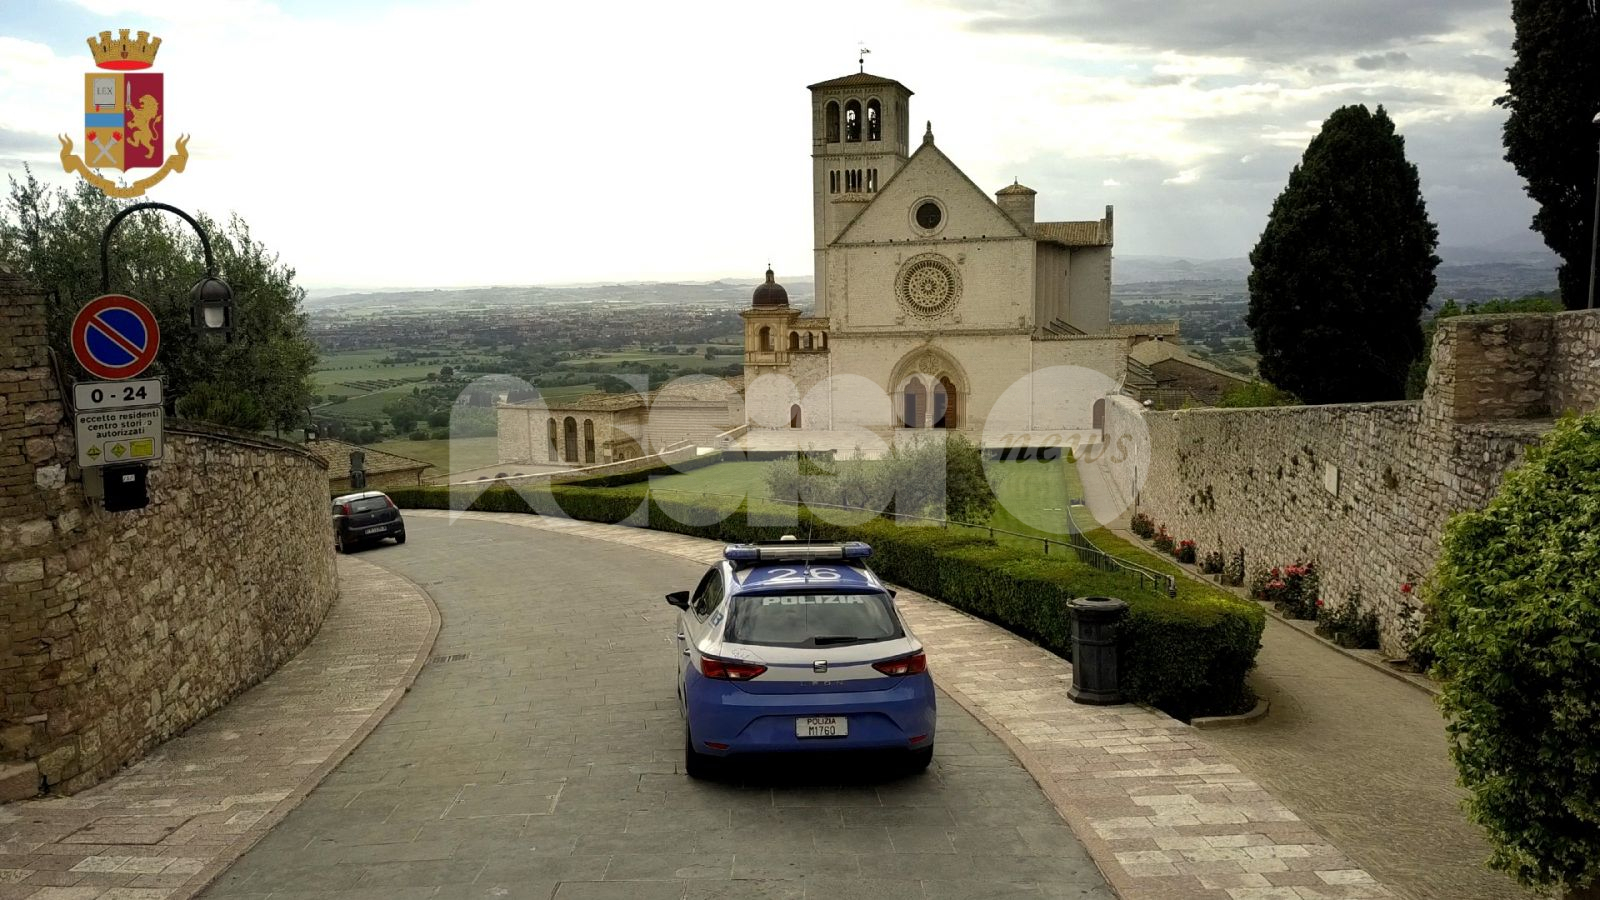 Nel comune di Assisi, due piazze in memoria dei poliziotti vittime delle stragi di via d'Amelio e Capaci e per Luca Benincasa